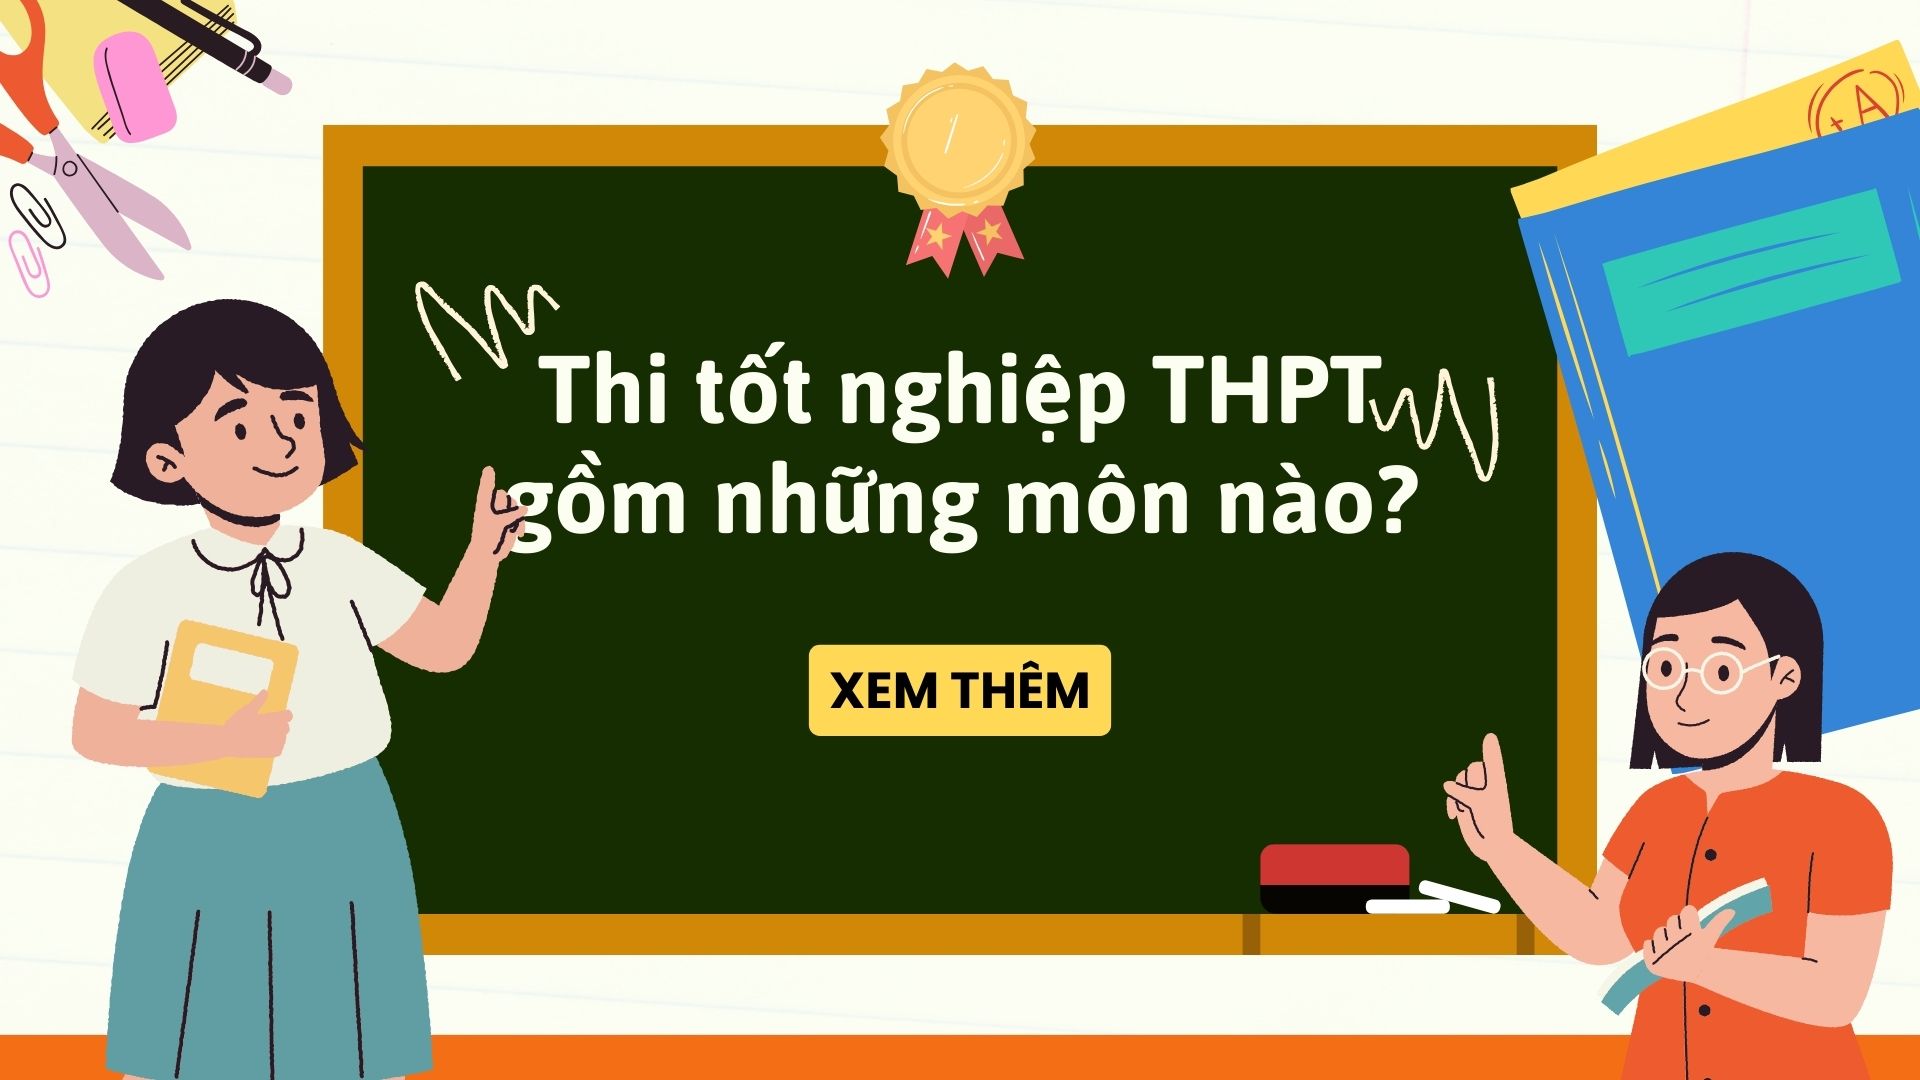 Thi tốt nghiệp THPT gồm những môn nào?